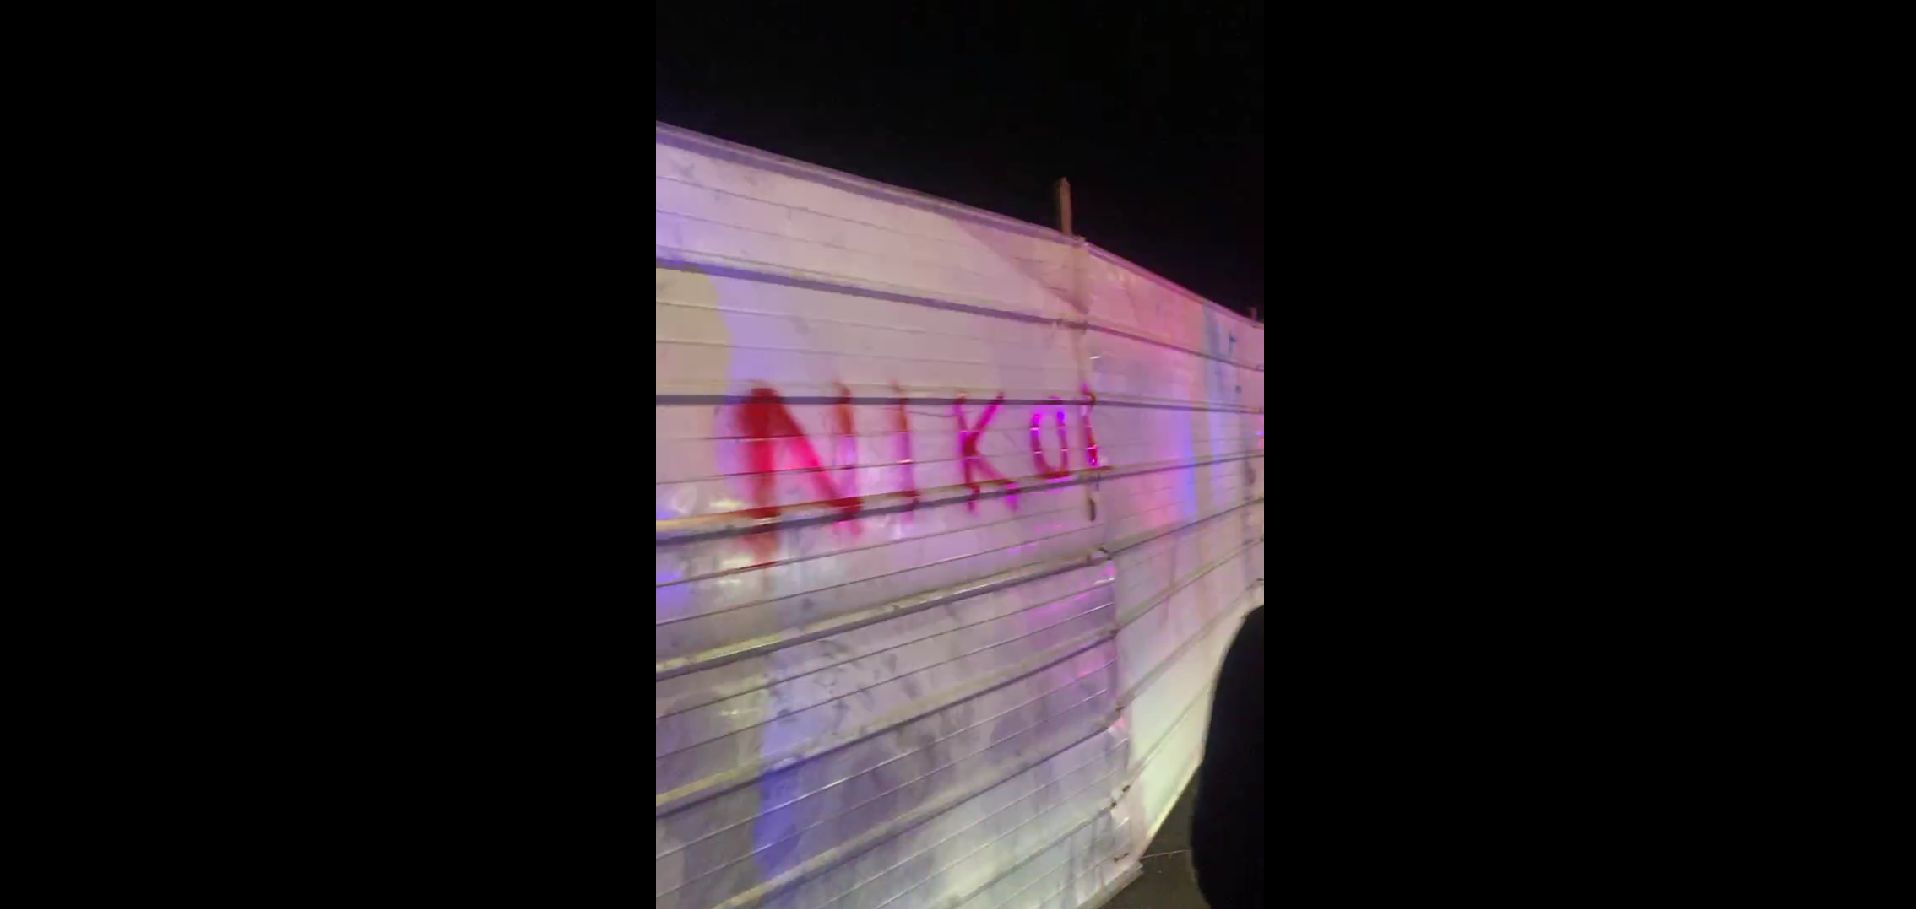 ՔԻՀԿ-ն կուսումնասիրի «Stop Nikol» ակցիայի շրջանակներում Վահագն Չախալյանին բերման ենթարկելու դեպքը (տեսանյութ)